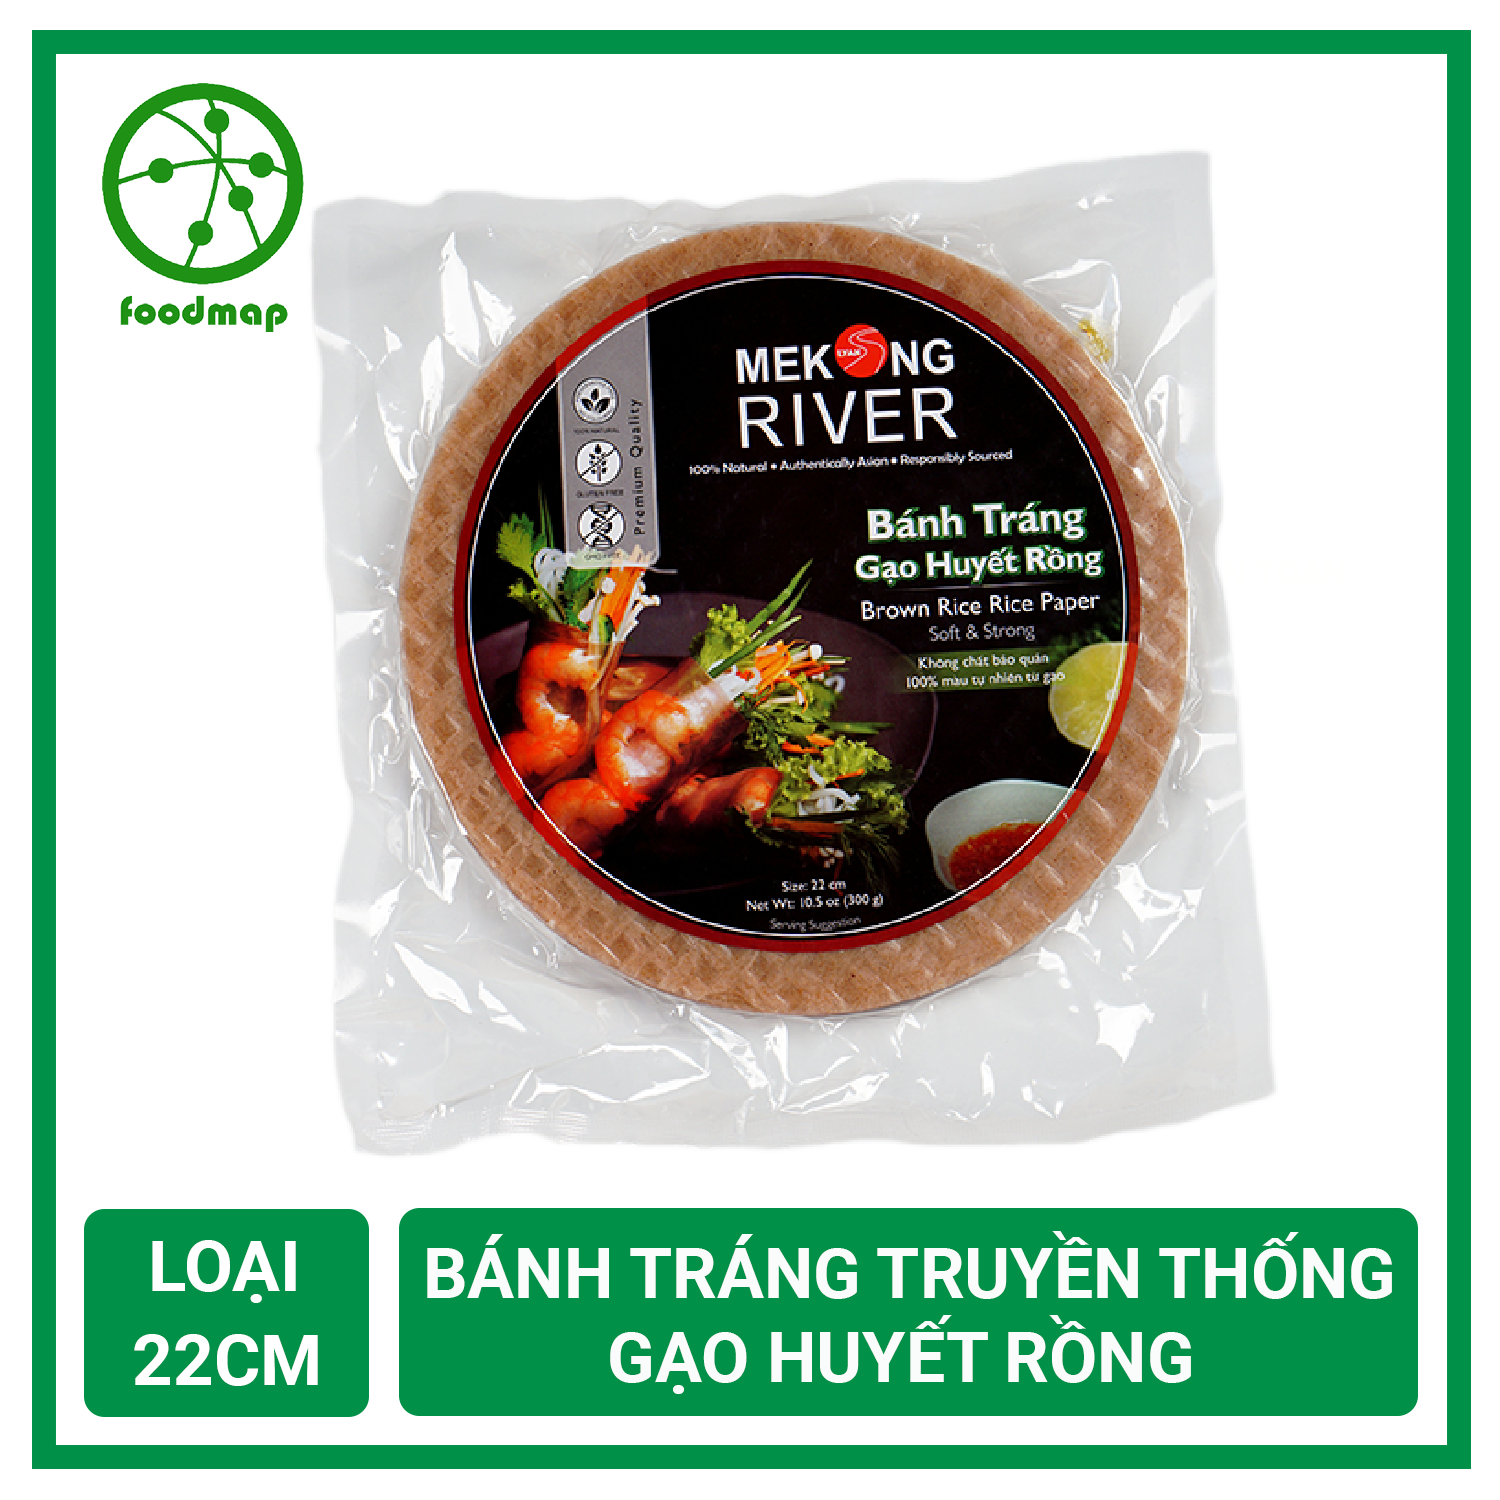 Bánh Tráng Huyết Rồng Mekong River – Loại 22cm – Foodmap